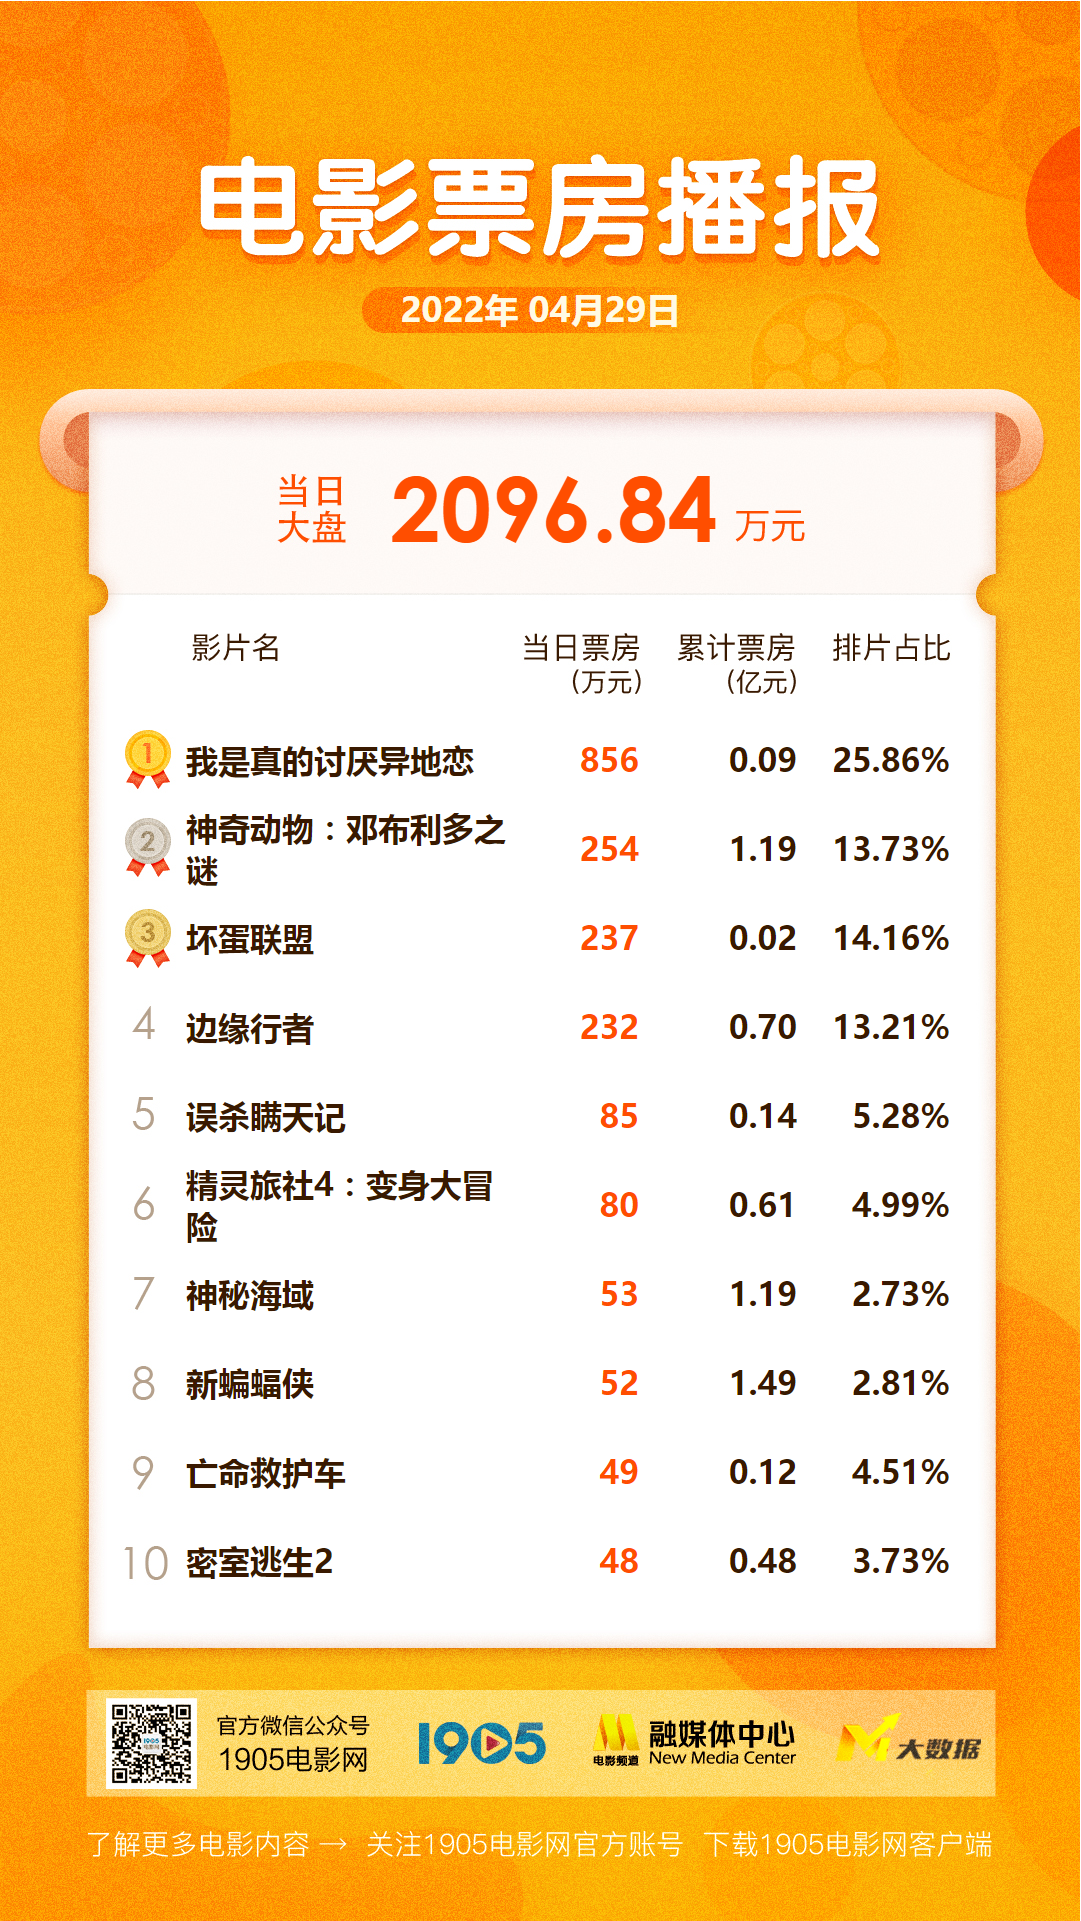 “异地恋”上映首日夺冠 《神奇动物3》将破1.2亿